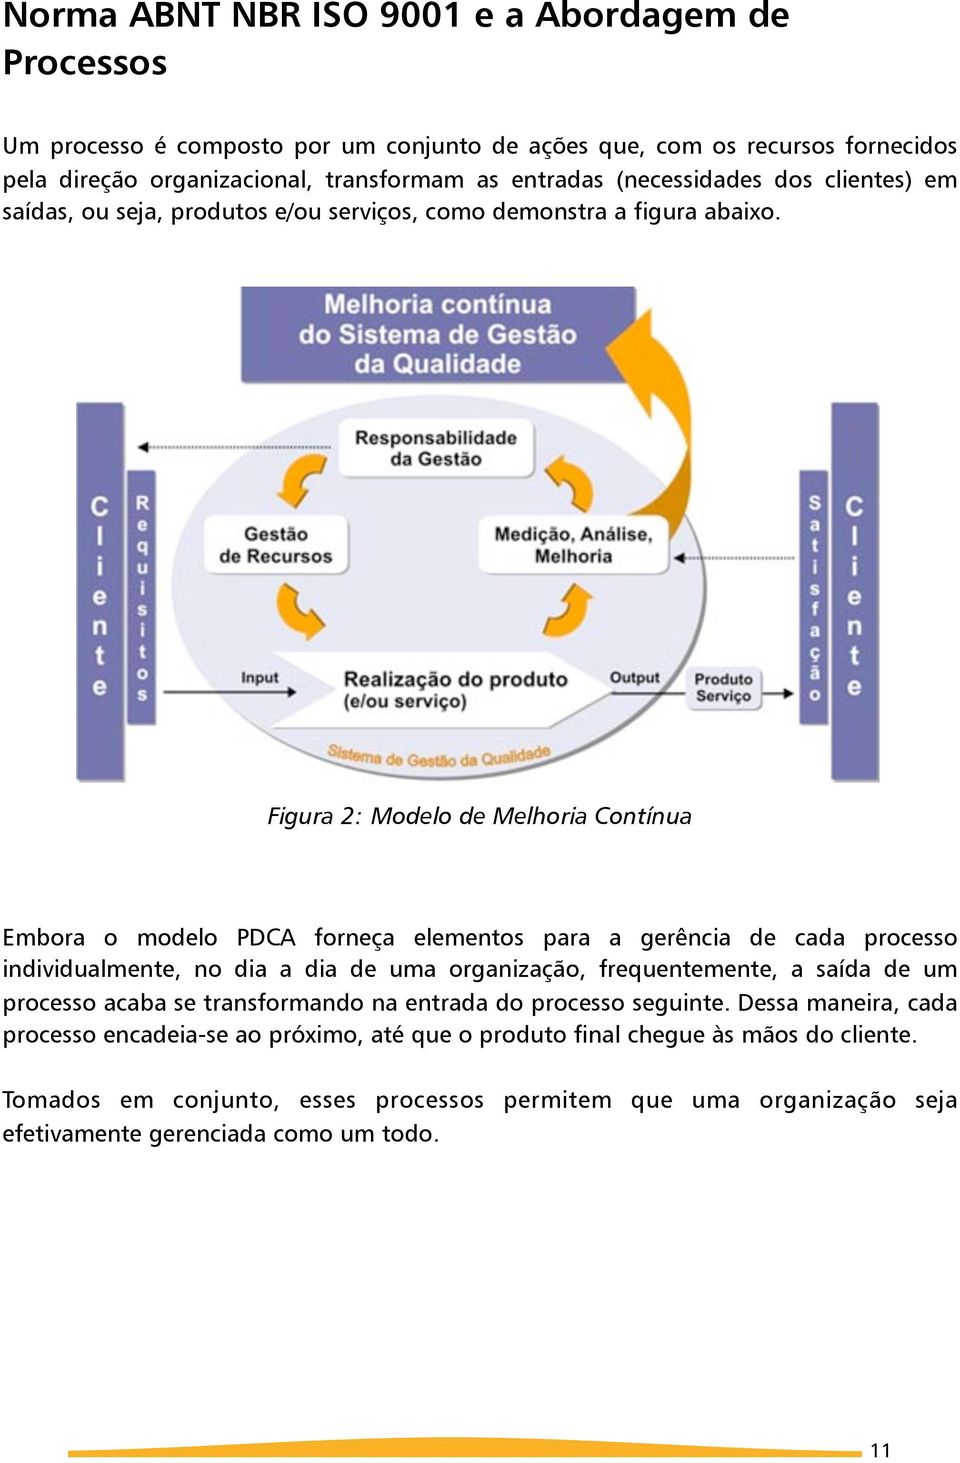 Figura 2: Modelo de Melhoria Contínua Embora o modelo PDCA forneça elementos para a gerência de cada processo individualmente, no dia a dia de uma organização, frequentemente, a saída de um